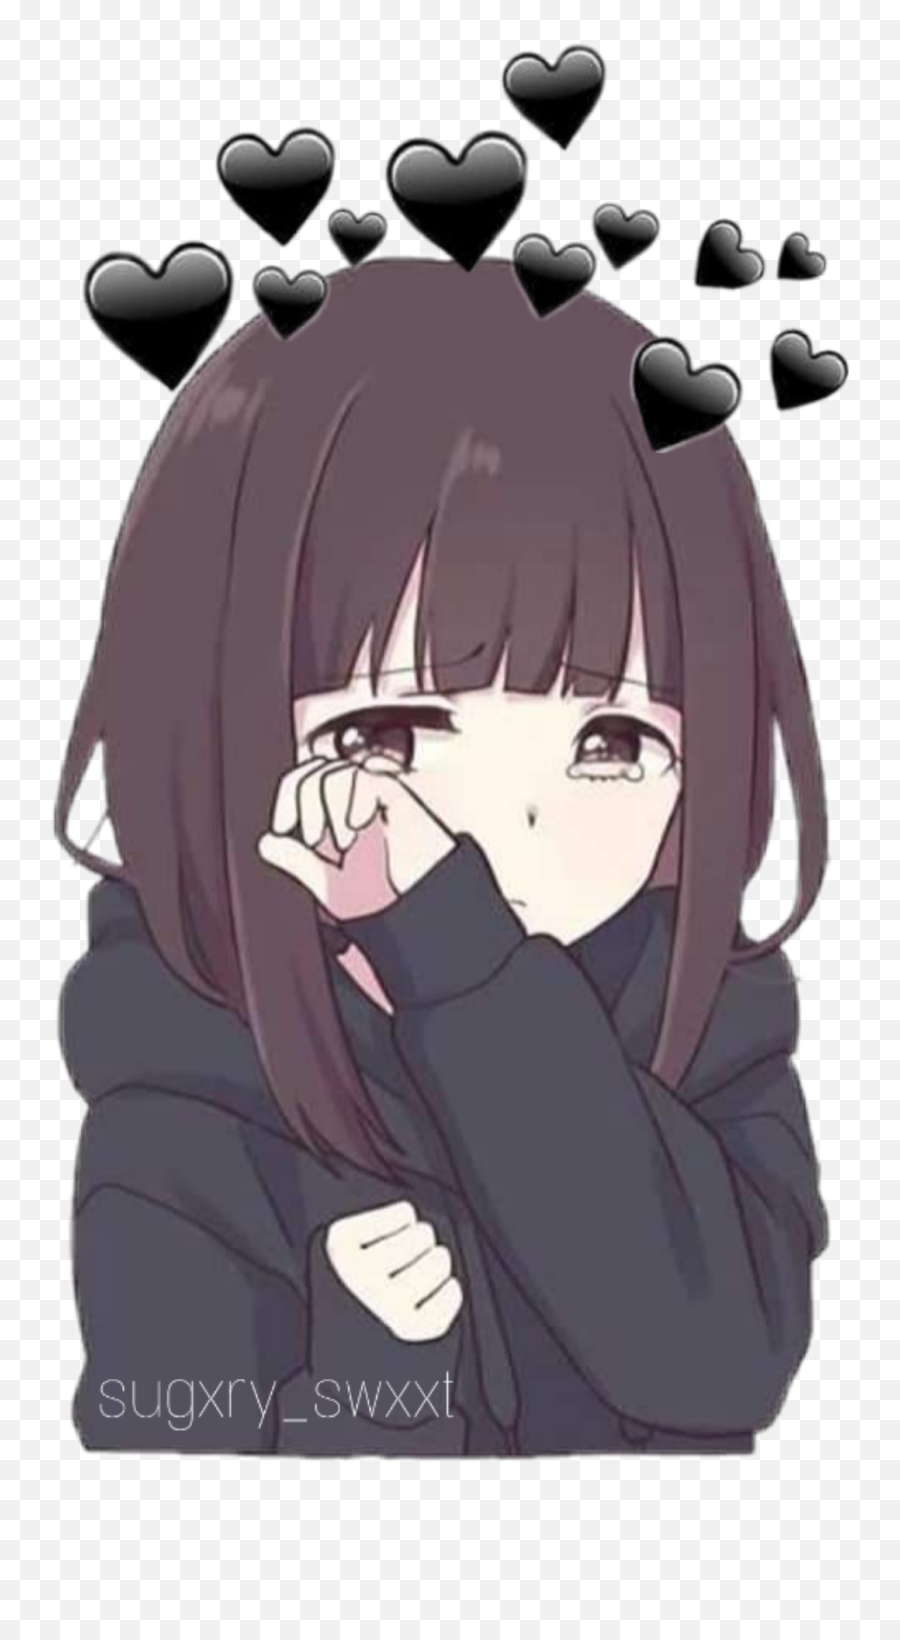 Cute Depressed Sad Girl Sticker - Sad Anime Girl Emoji,Sad Girl Emoji